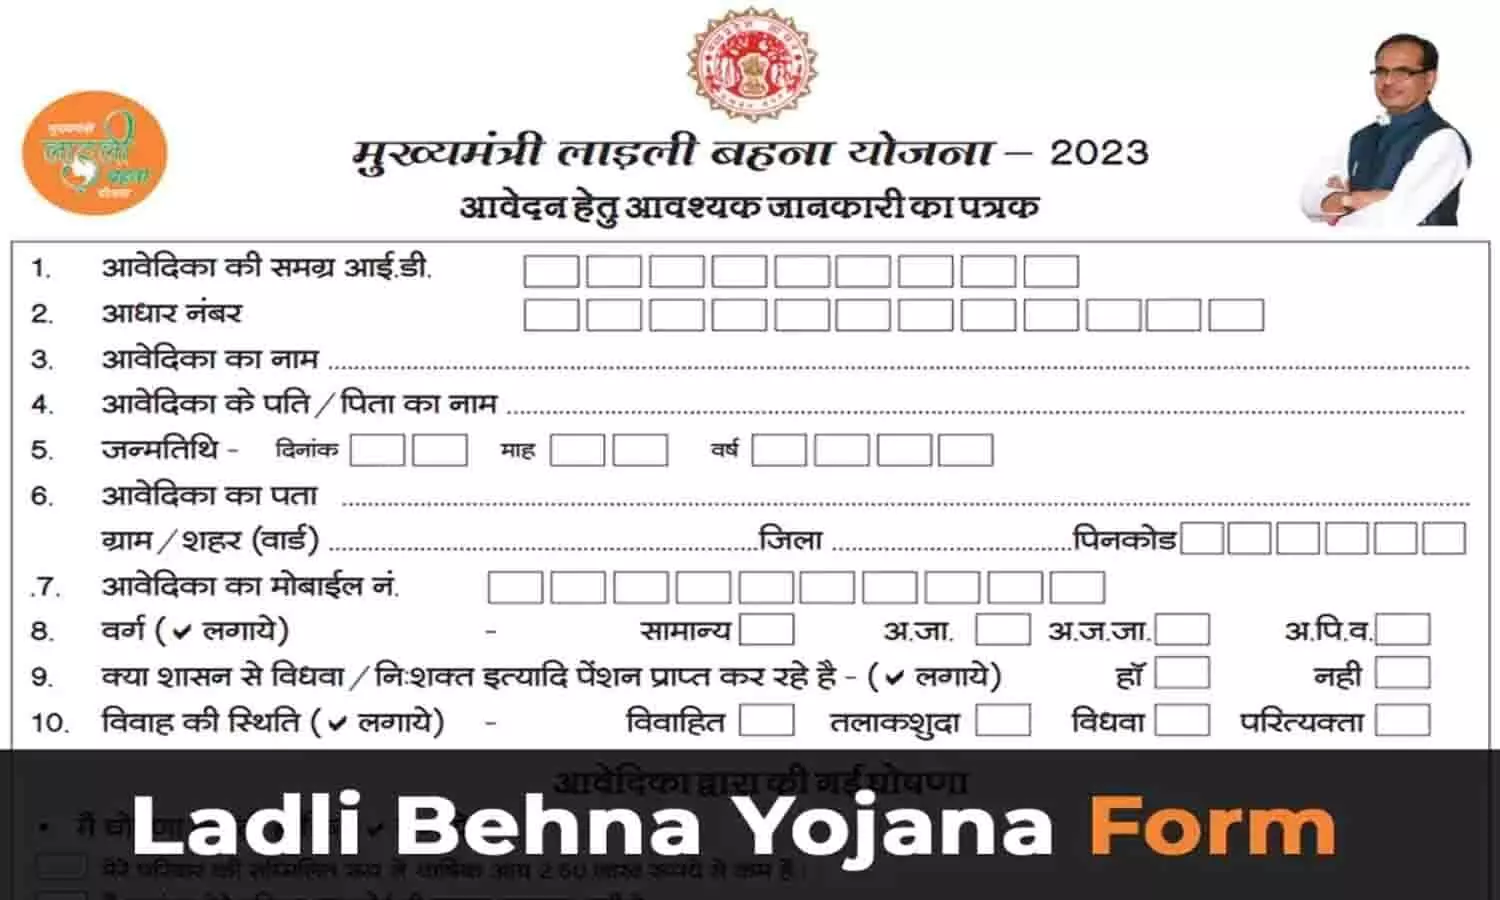 Ladli Behna Yojana New Form PDF Download: लाड़ली बहना योजना का नया रजिस्ट्रेशन फॉर्म यहाँ से डाउनलोड करें 2023